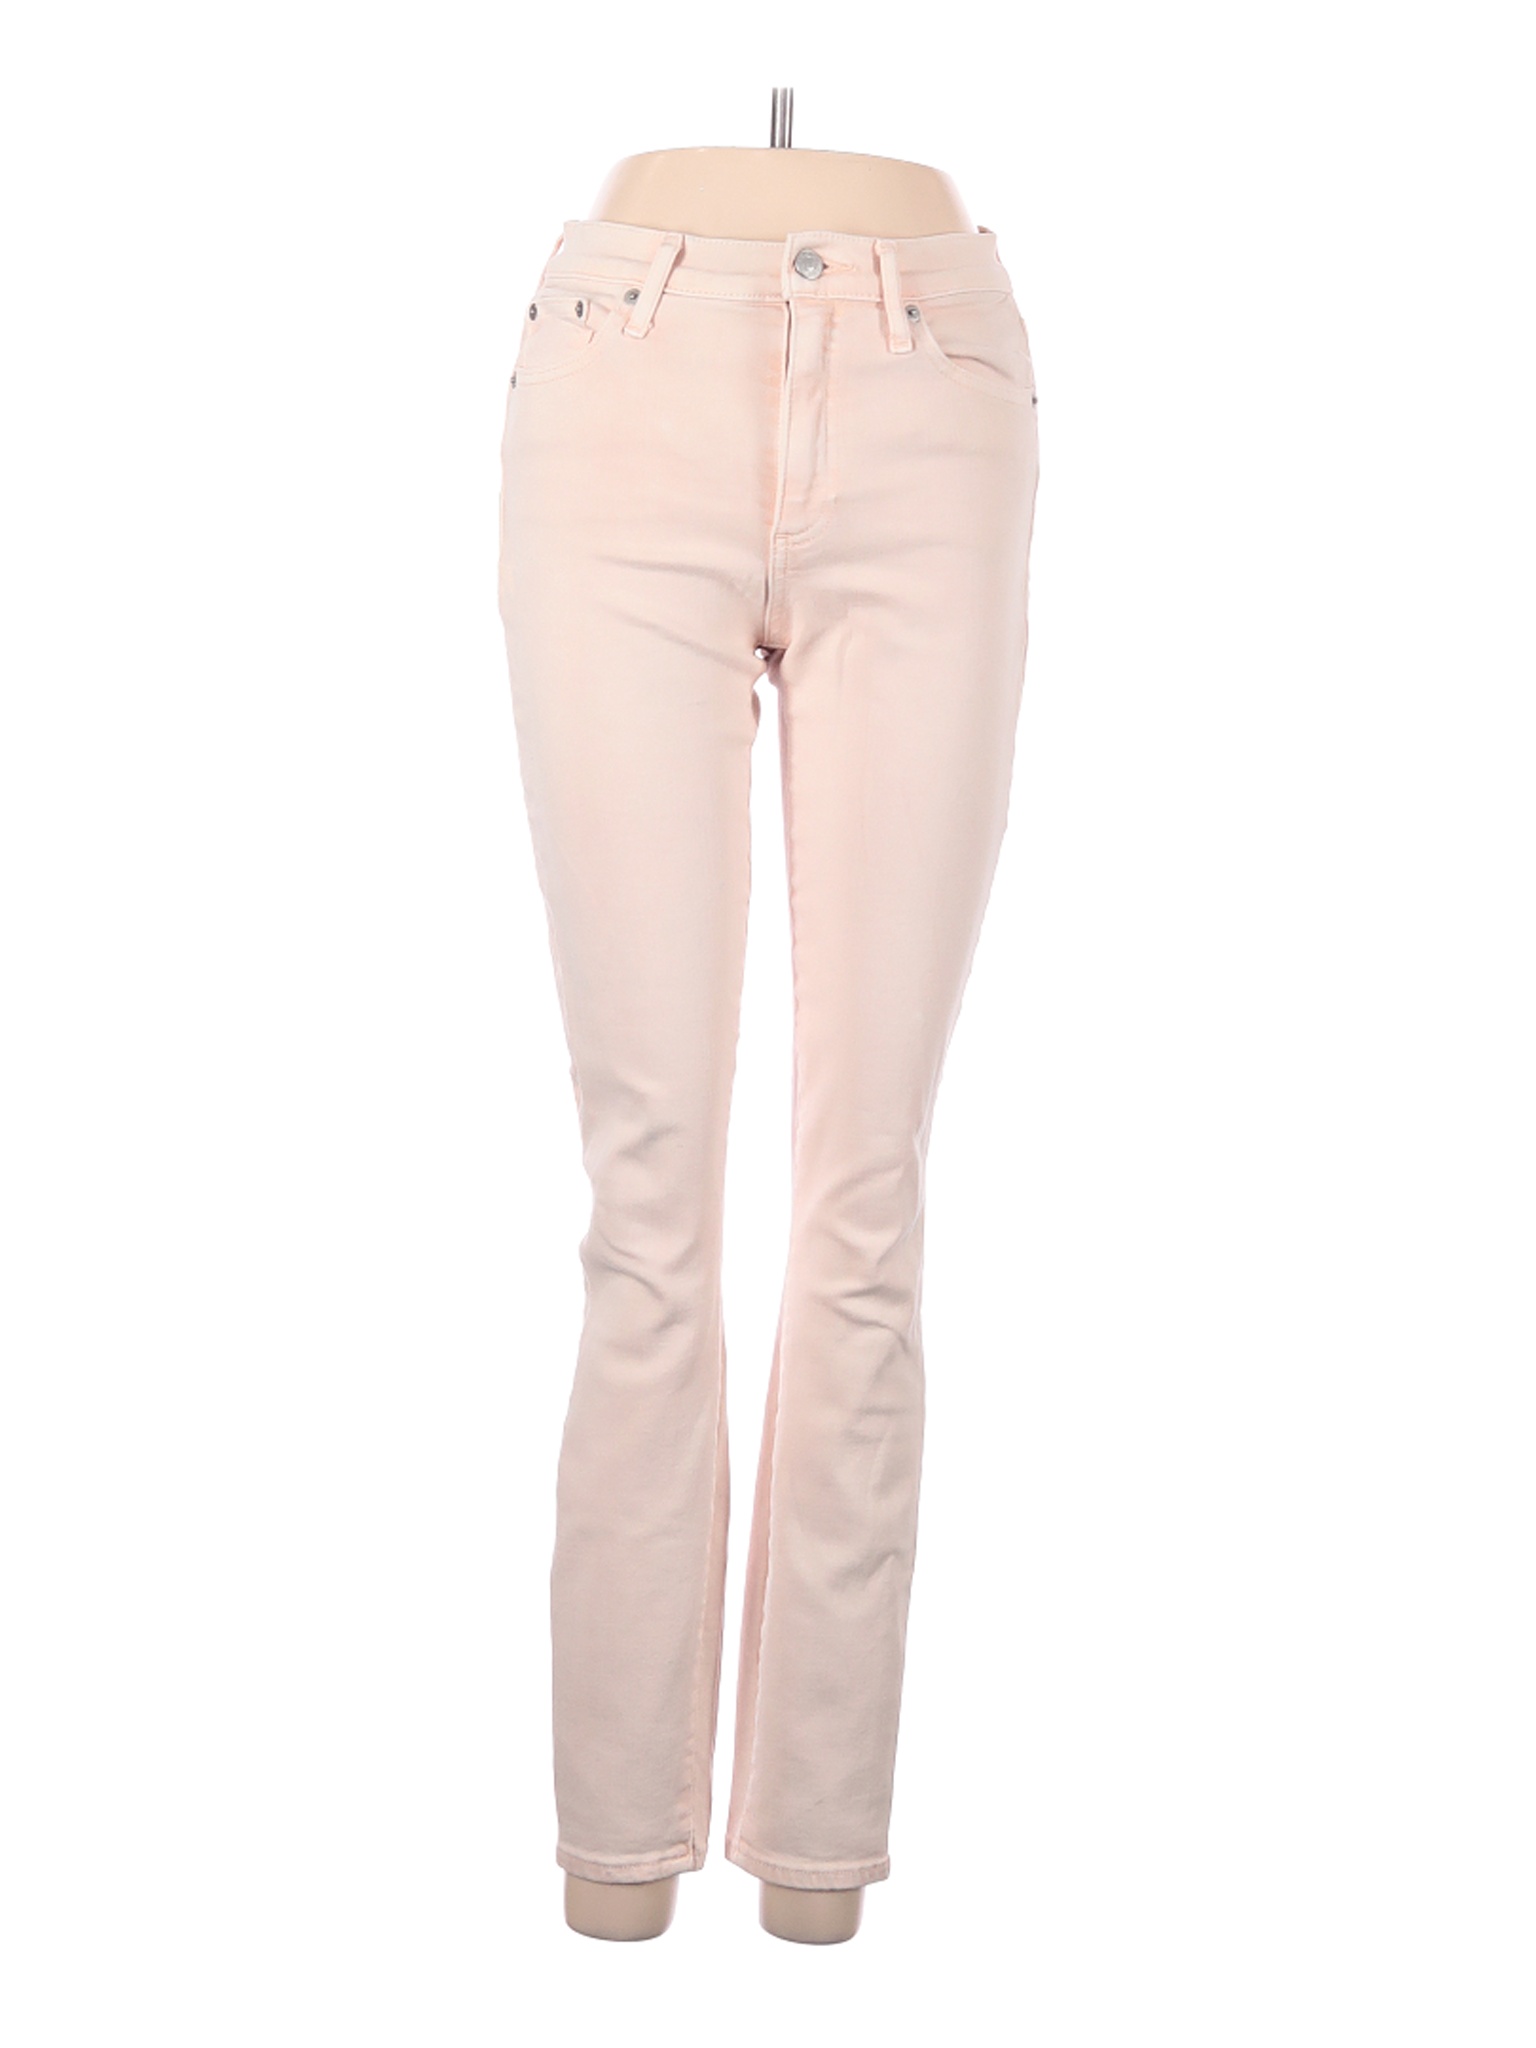 Gap Women Pink Jeans 27W | eBay